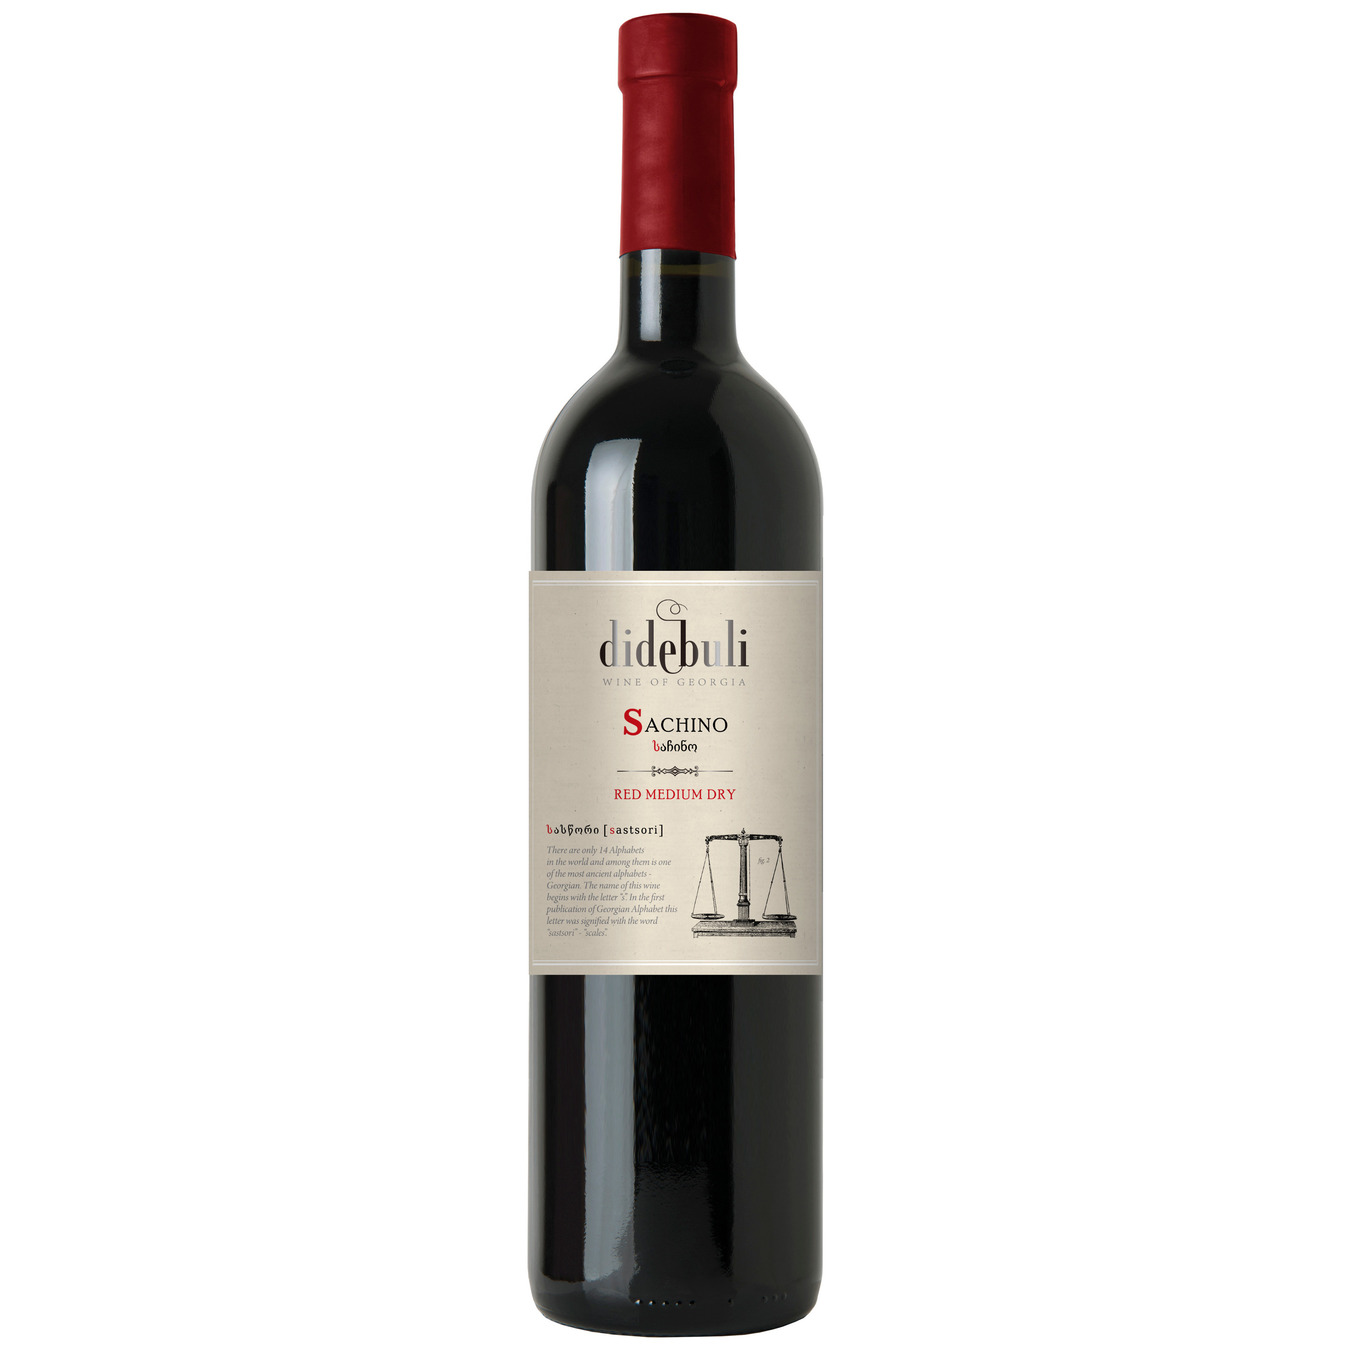 Didebuli Sachino red dry wine 12% 0,75l